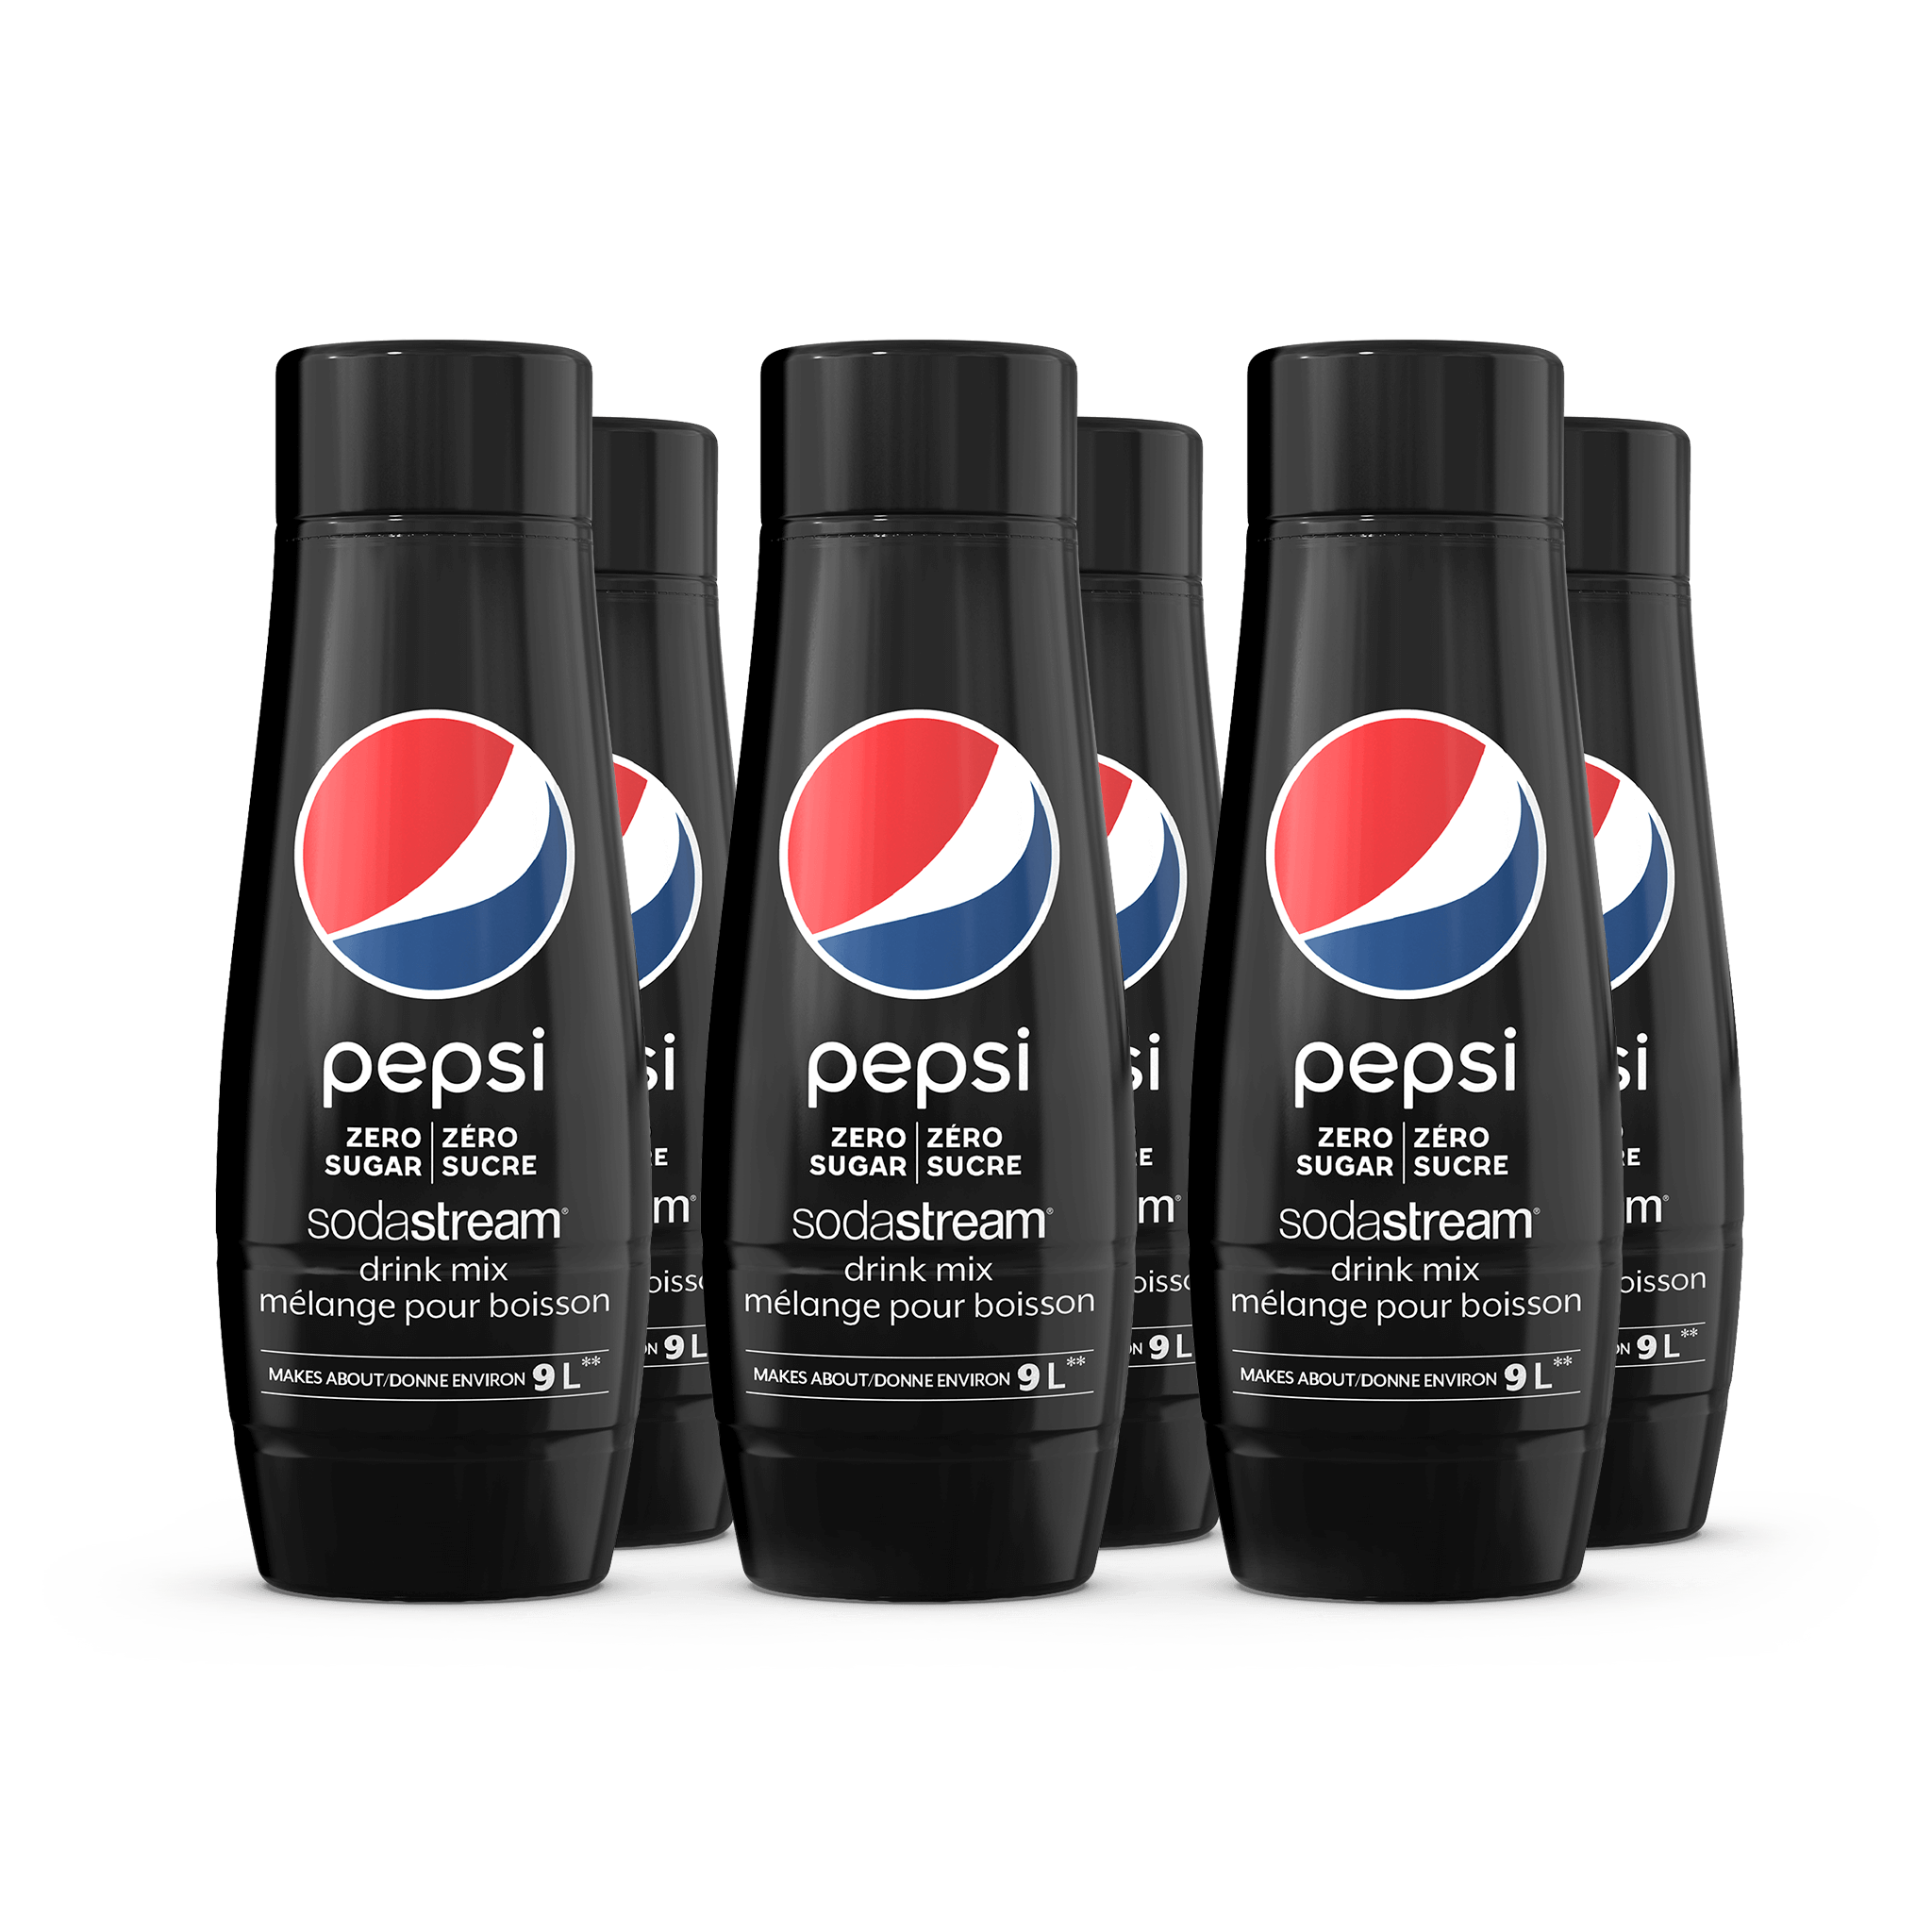 Pepsi Zero Sugar 6 Pack sodastream